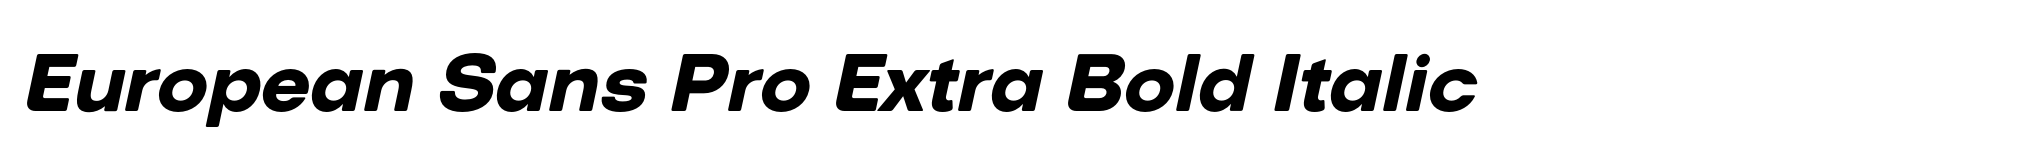 European Sans Pro Extra Bold Italic image